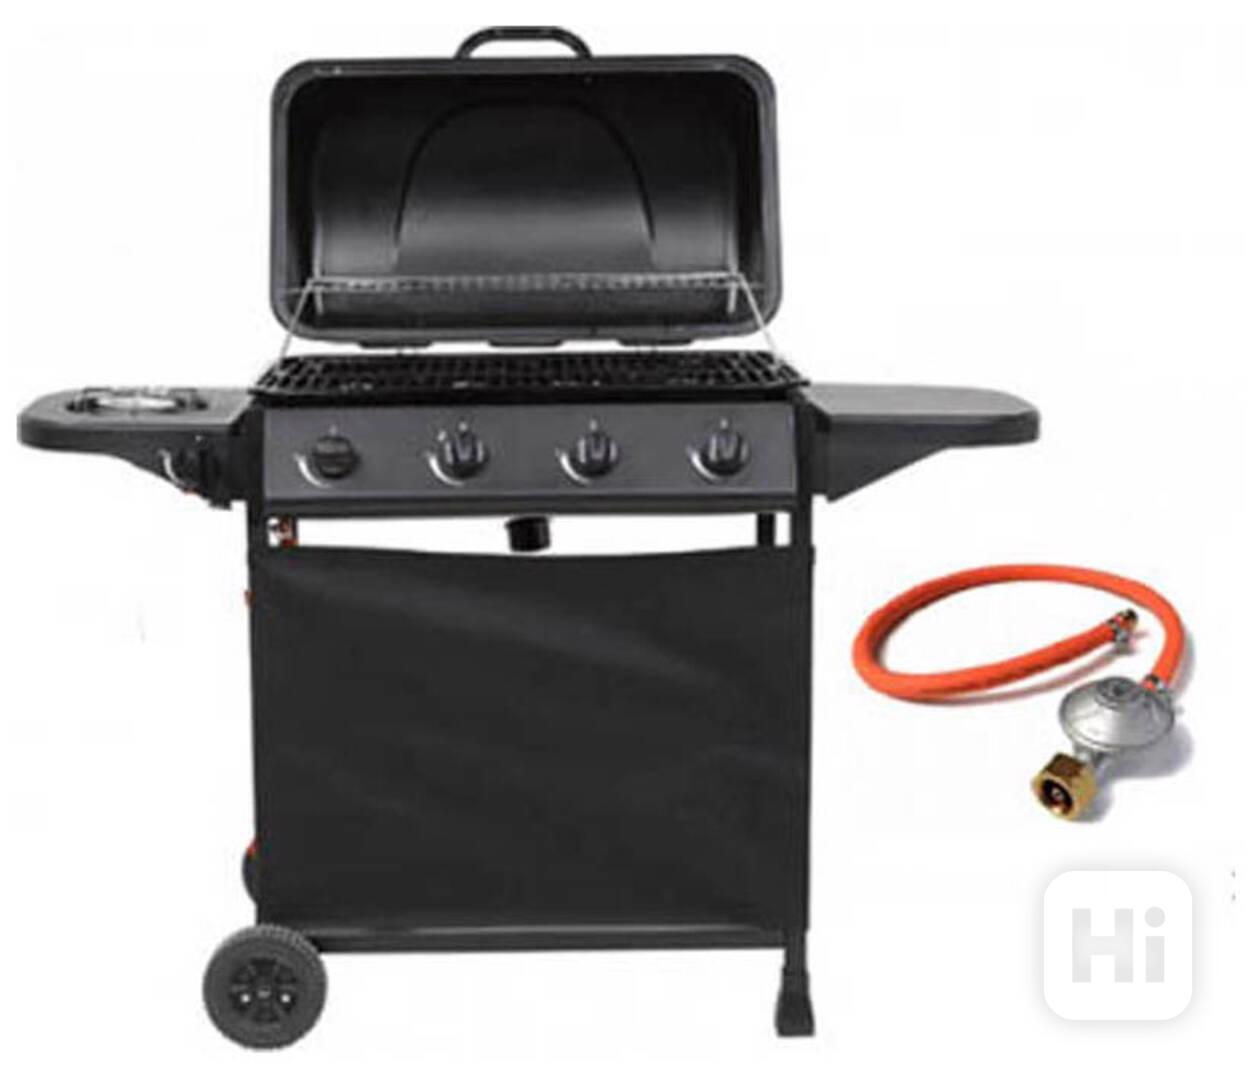 Plynový gril Barbecue BBQ 4 hořáky - nový,nepoužitý,záruka - foto 1